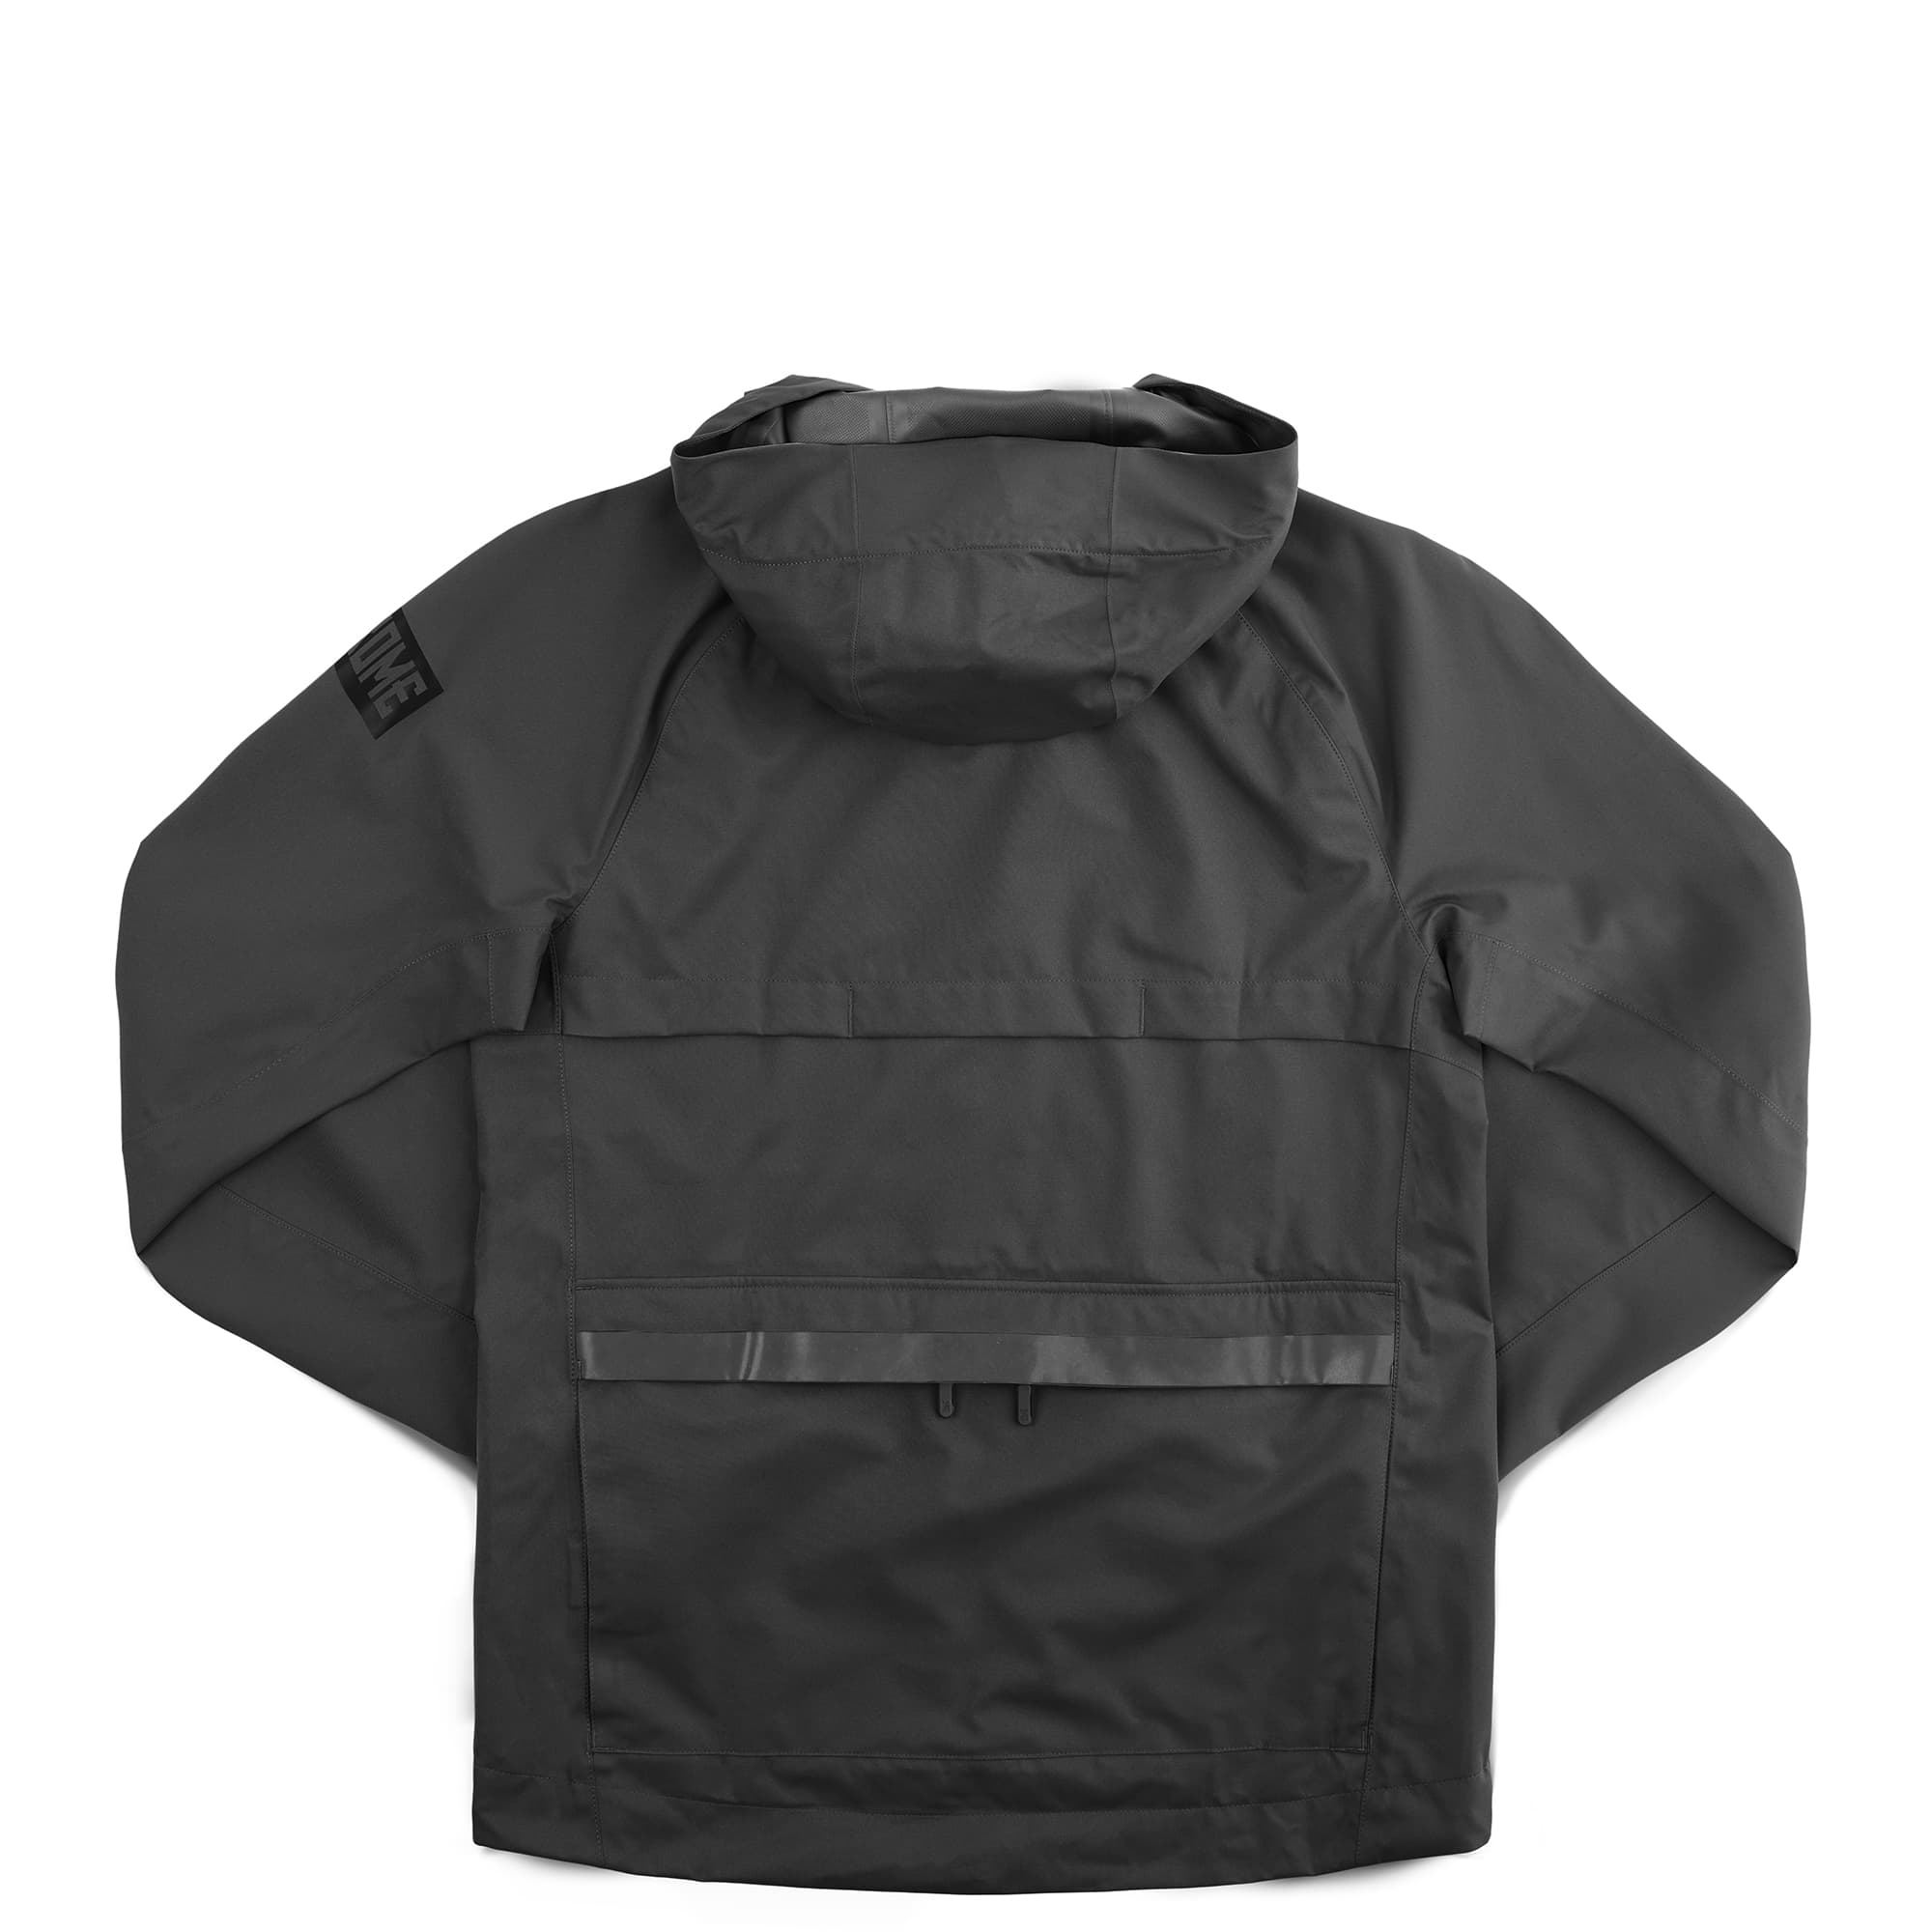 Waterproof rain jacket in black back view